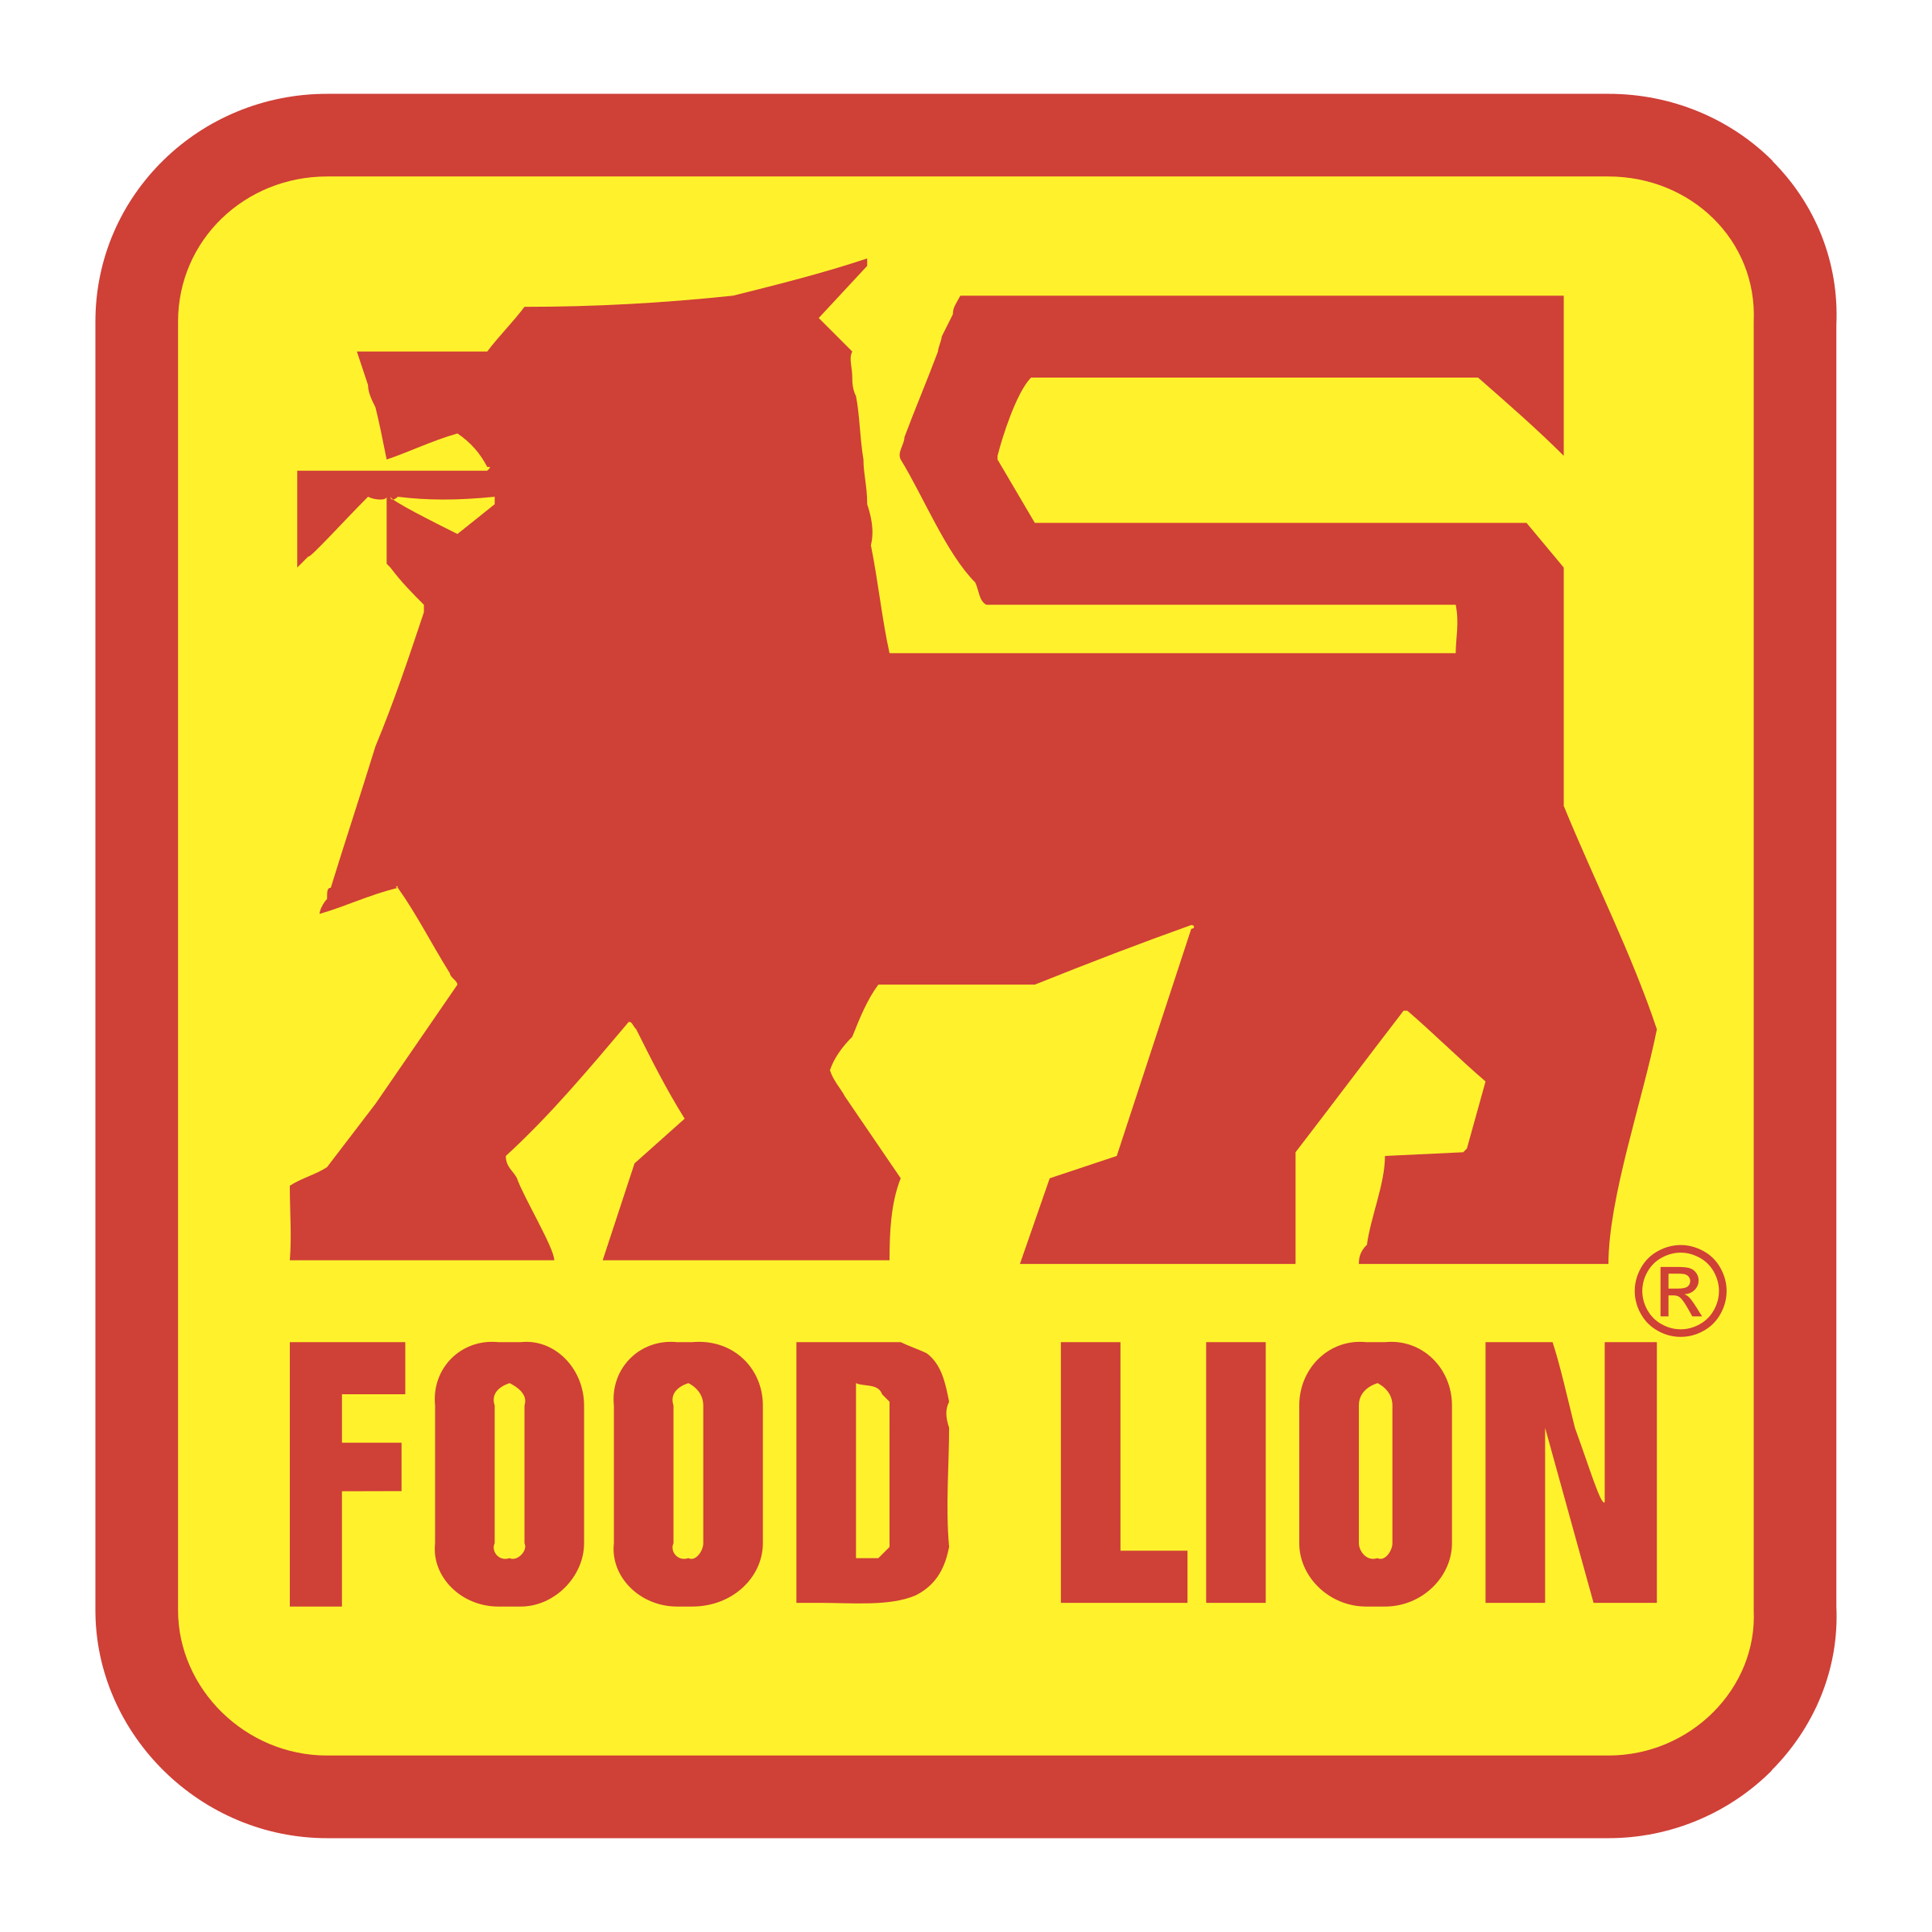 Food Lion Logo - Food Lion Logo PNG Transparent & SVG Vector - Freebie Supply